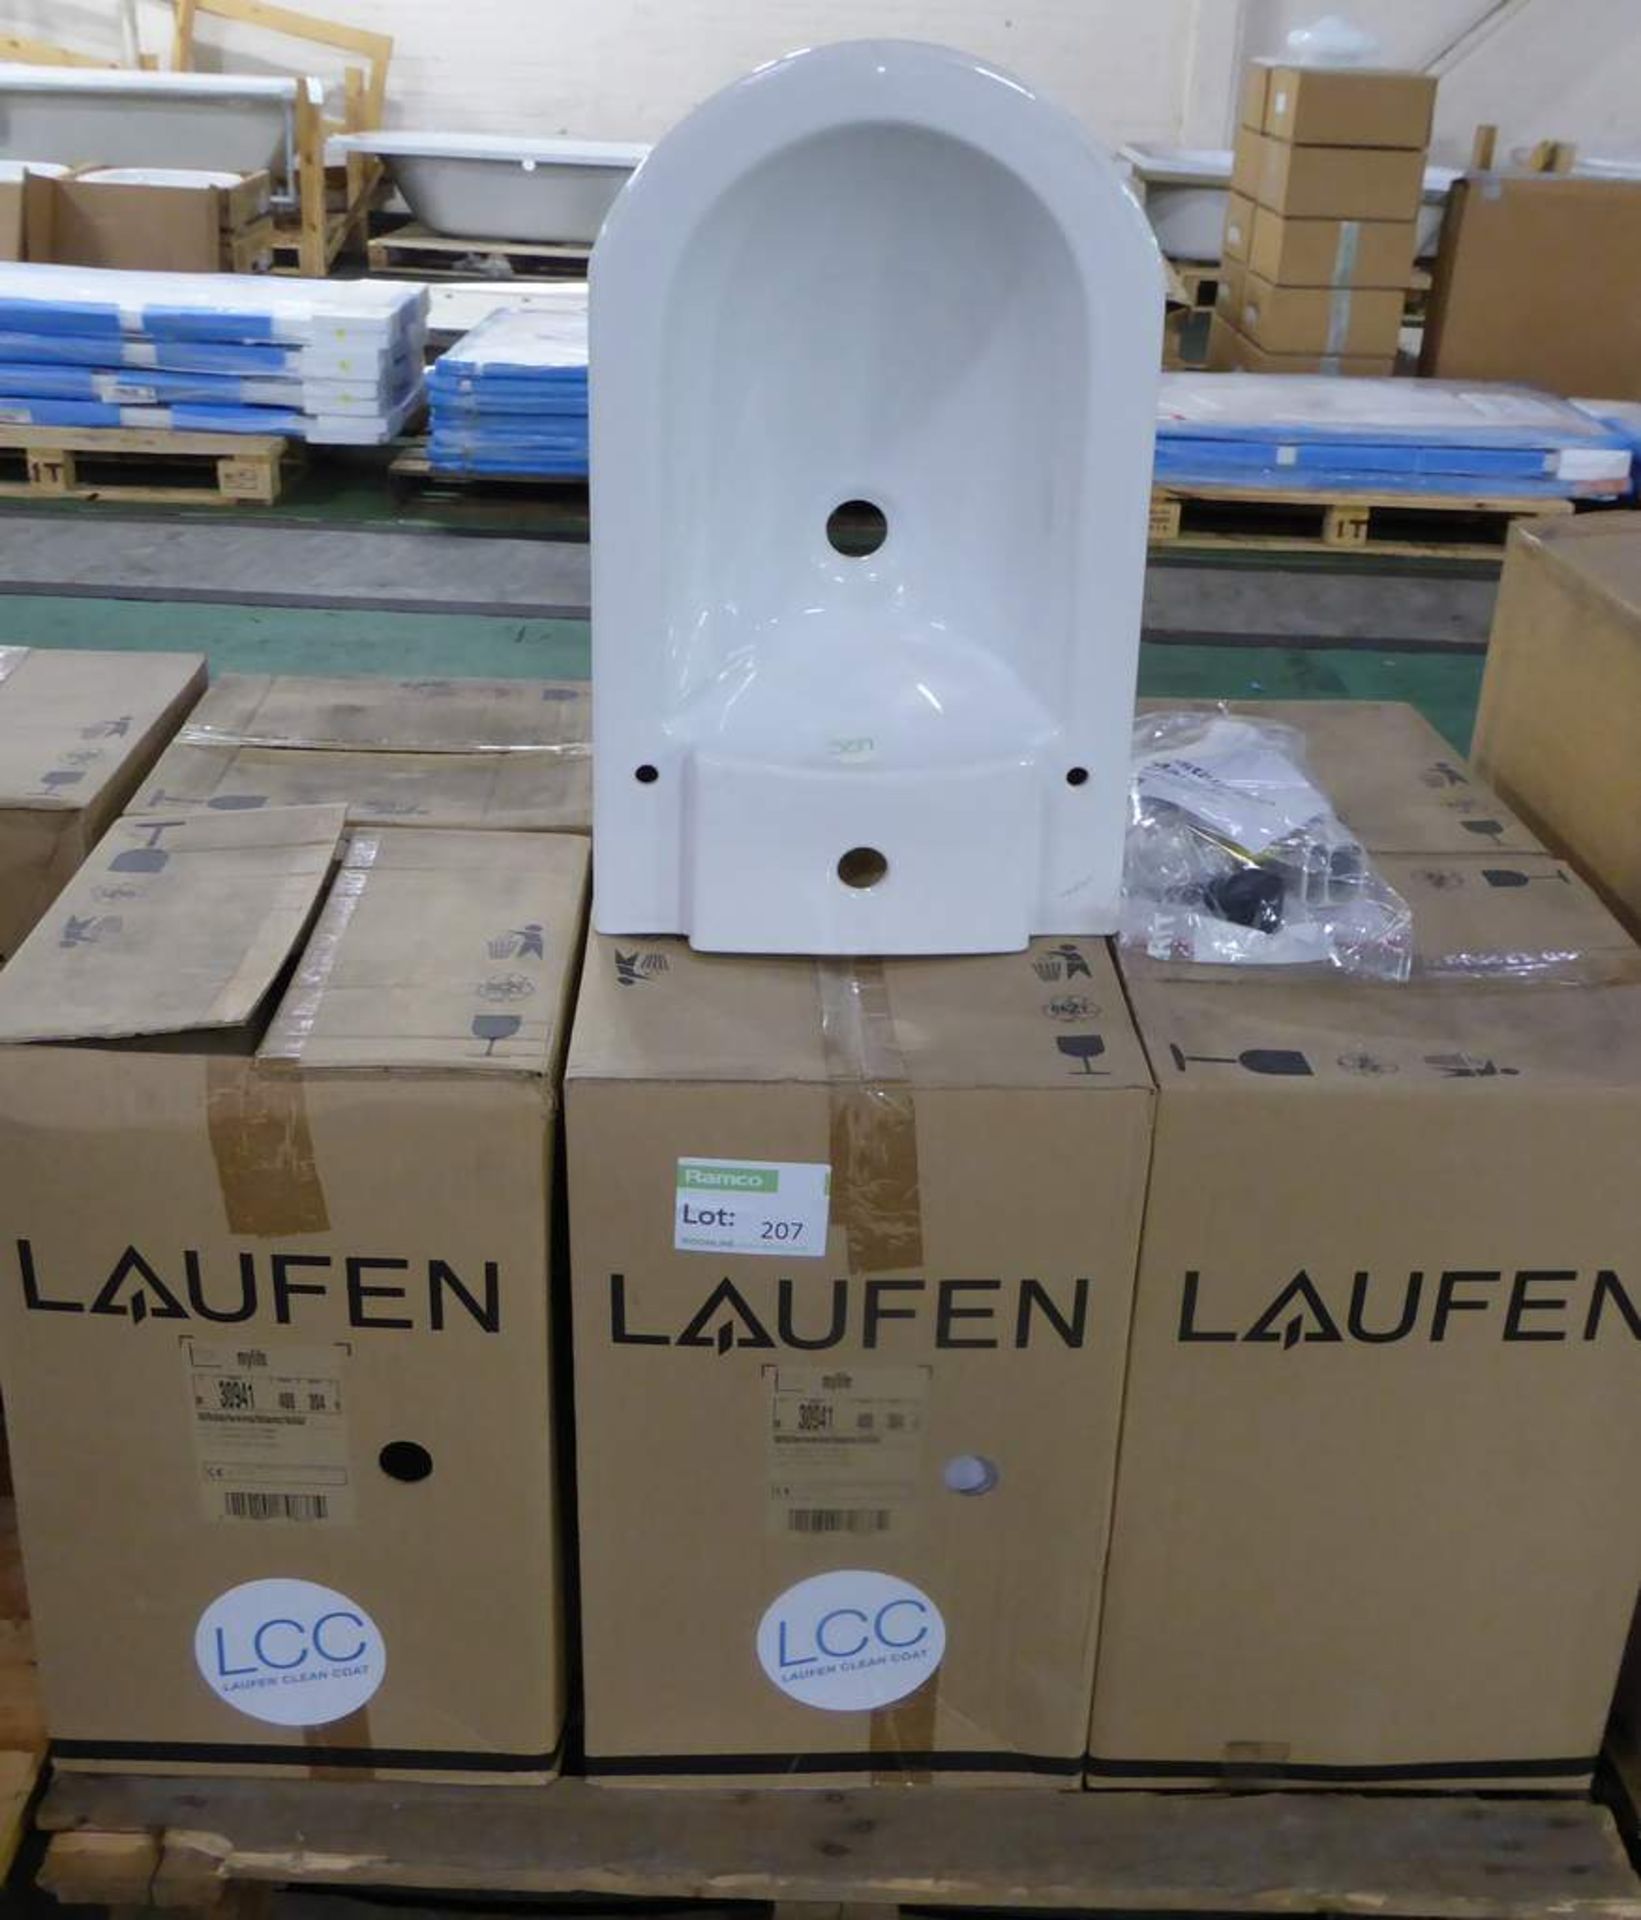 6x Laufen Mylife white toilet pan 62cm